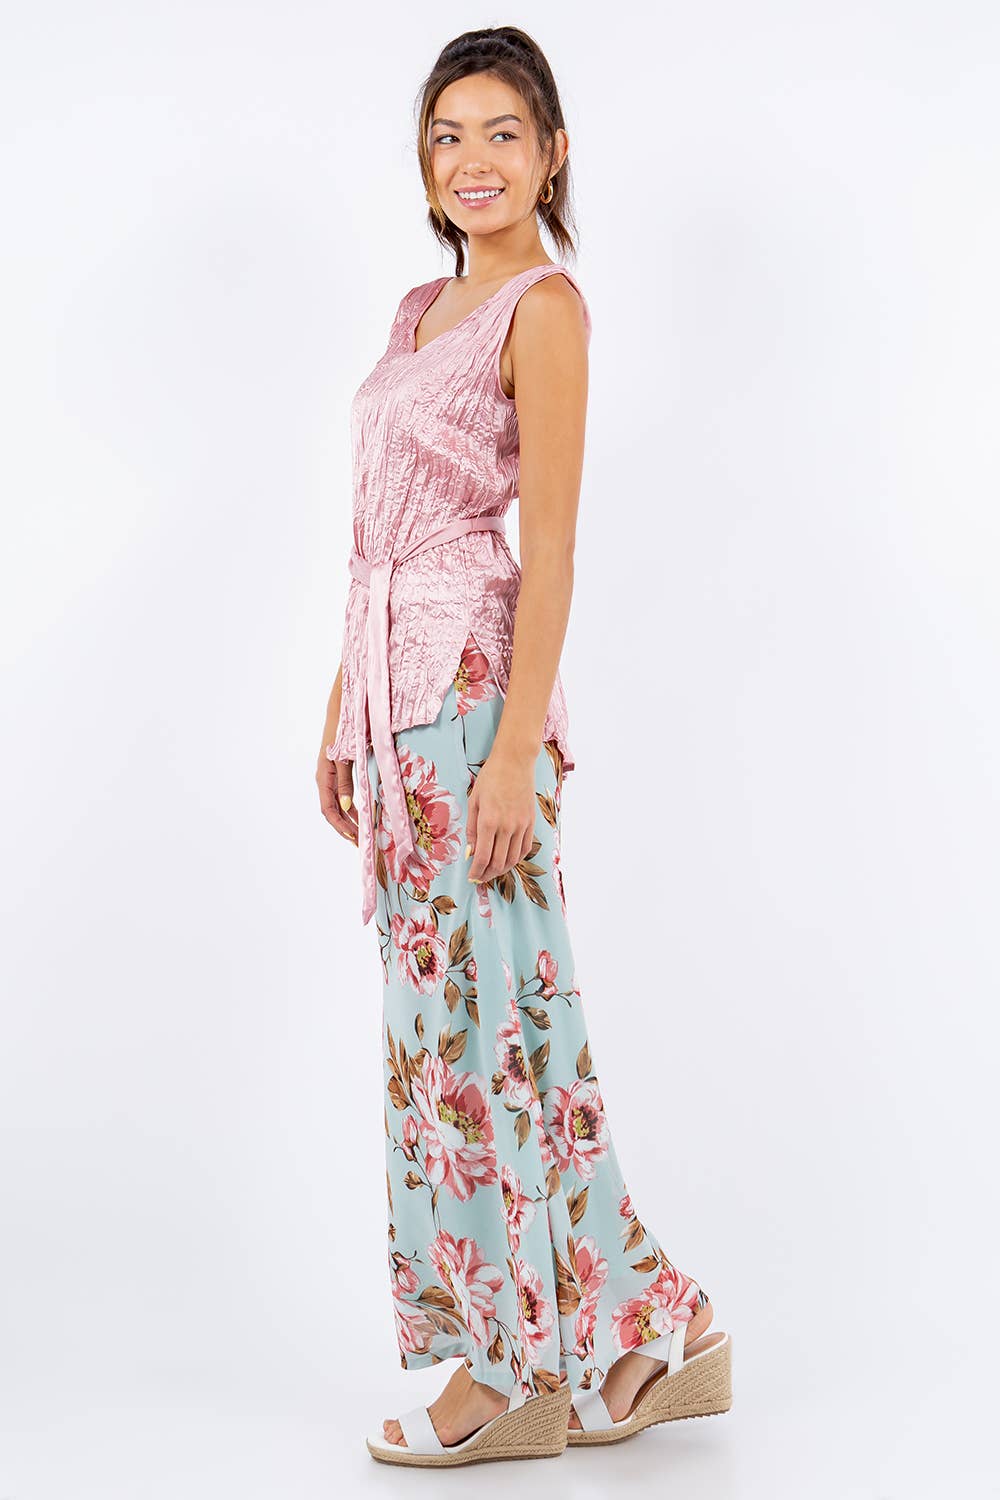 Georgette Bias Cut Rose Print Skirt